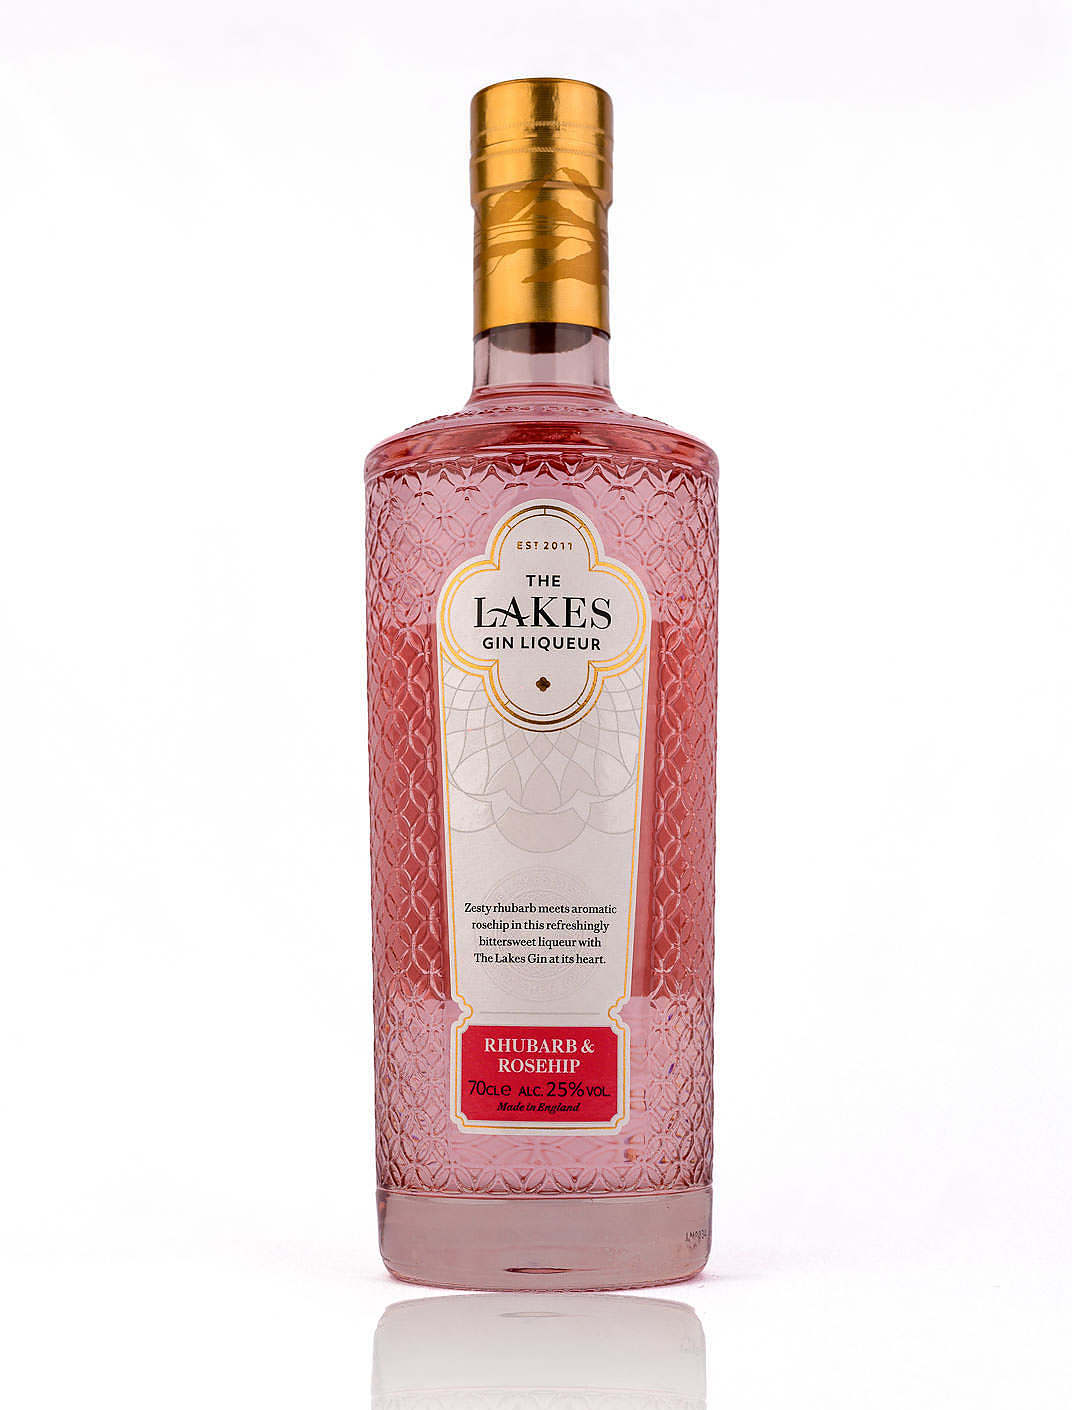 The Lakes - Rhubarb & Rosehip Gin Liqueur - Durham Ginstitute